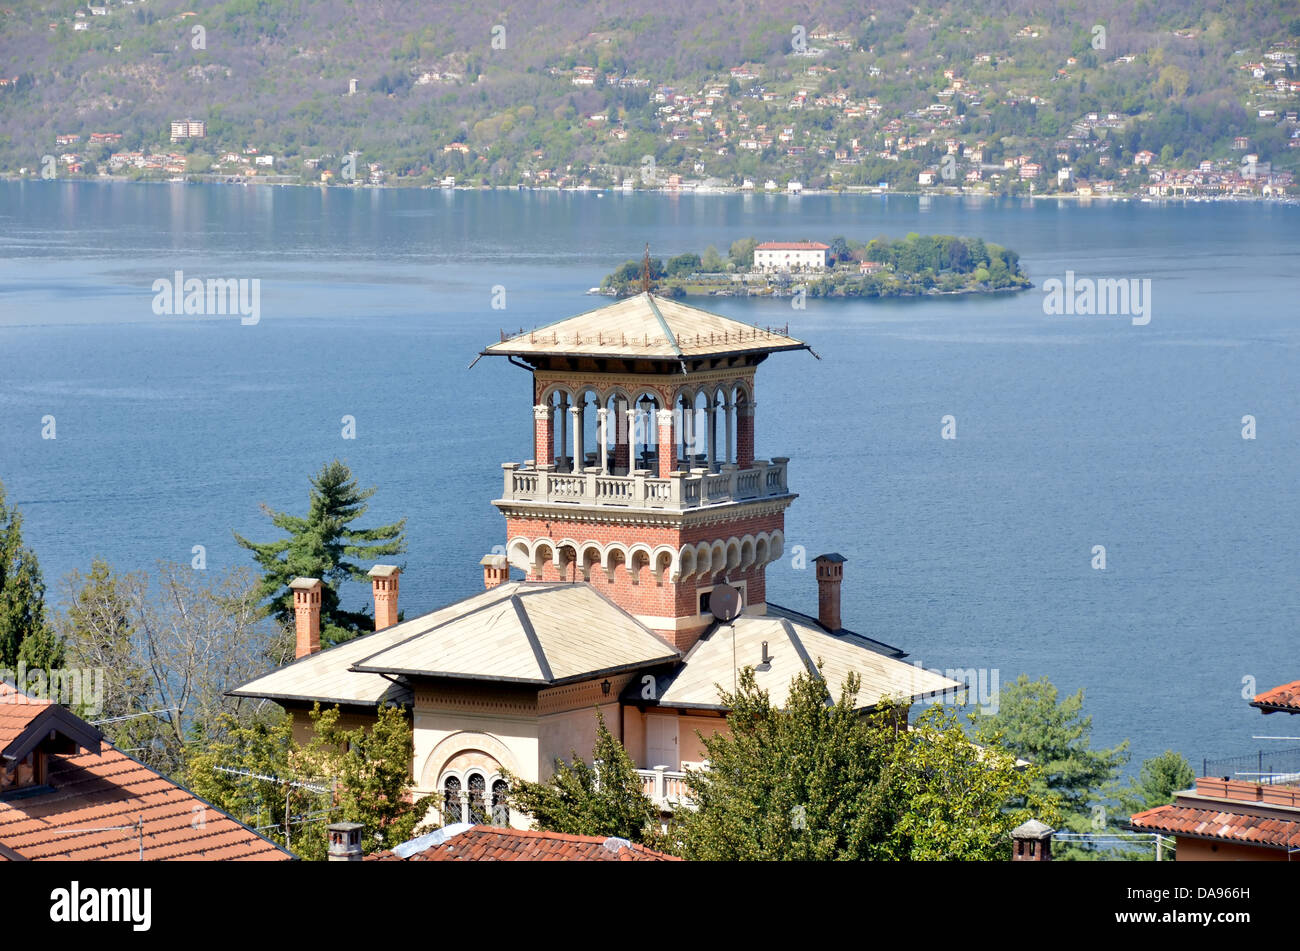 Lago Maggiore nel nord Italia con le isole Borromee (Isola Madre) e la bella architettura, ideale per vacanze culturali Foto Stock